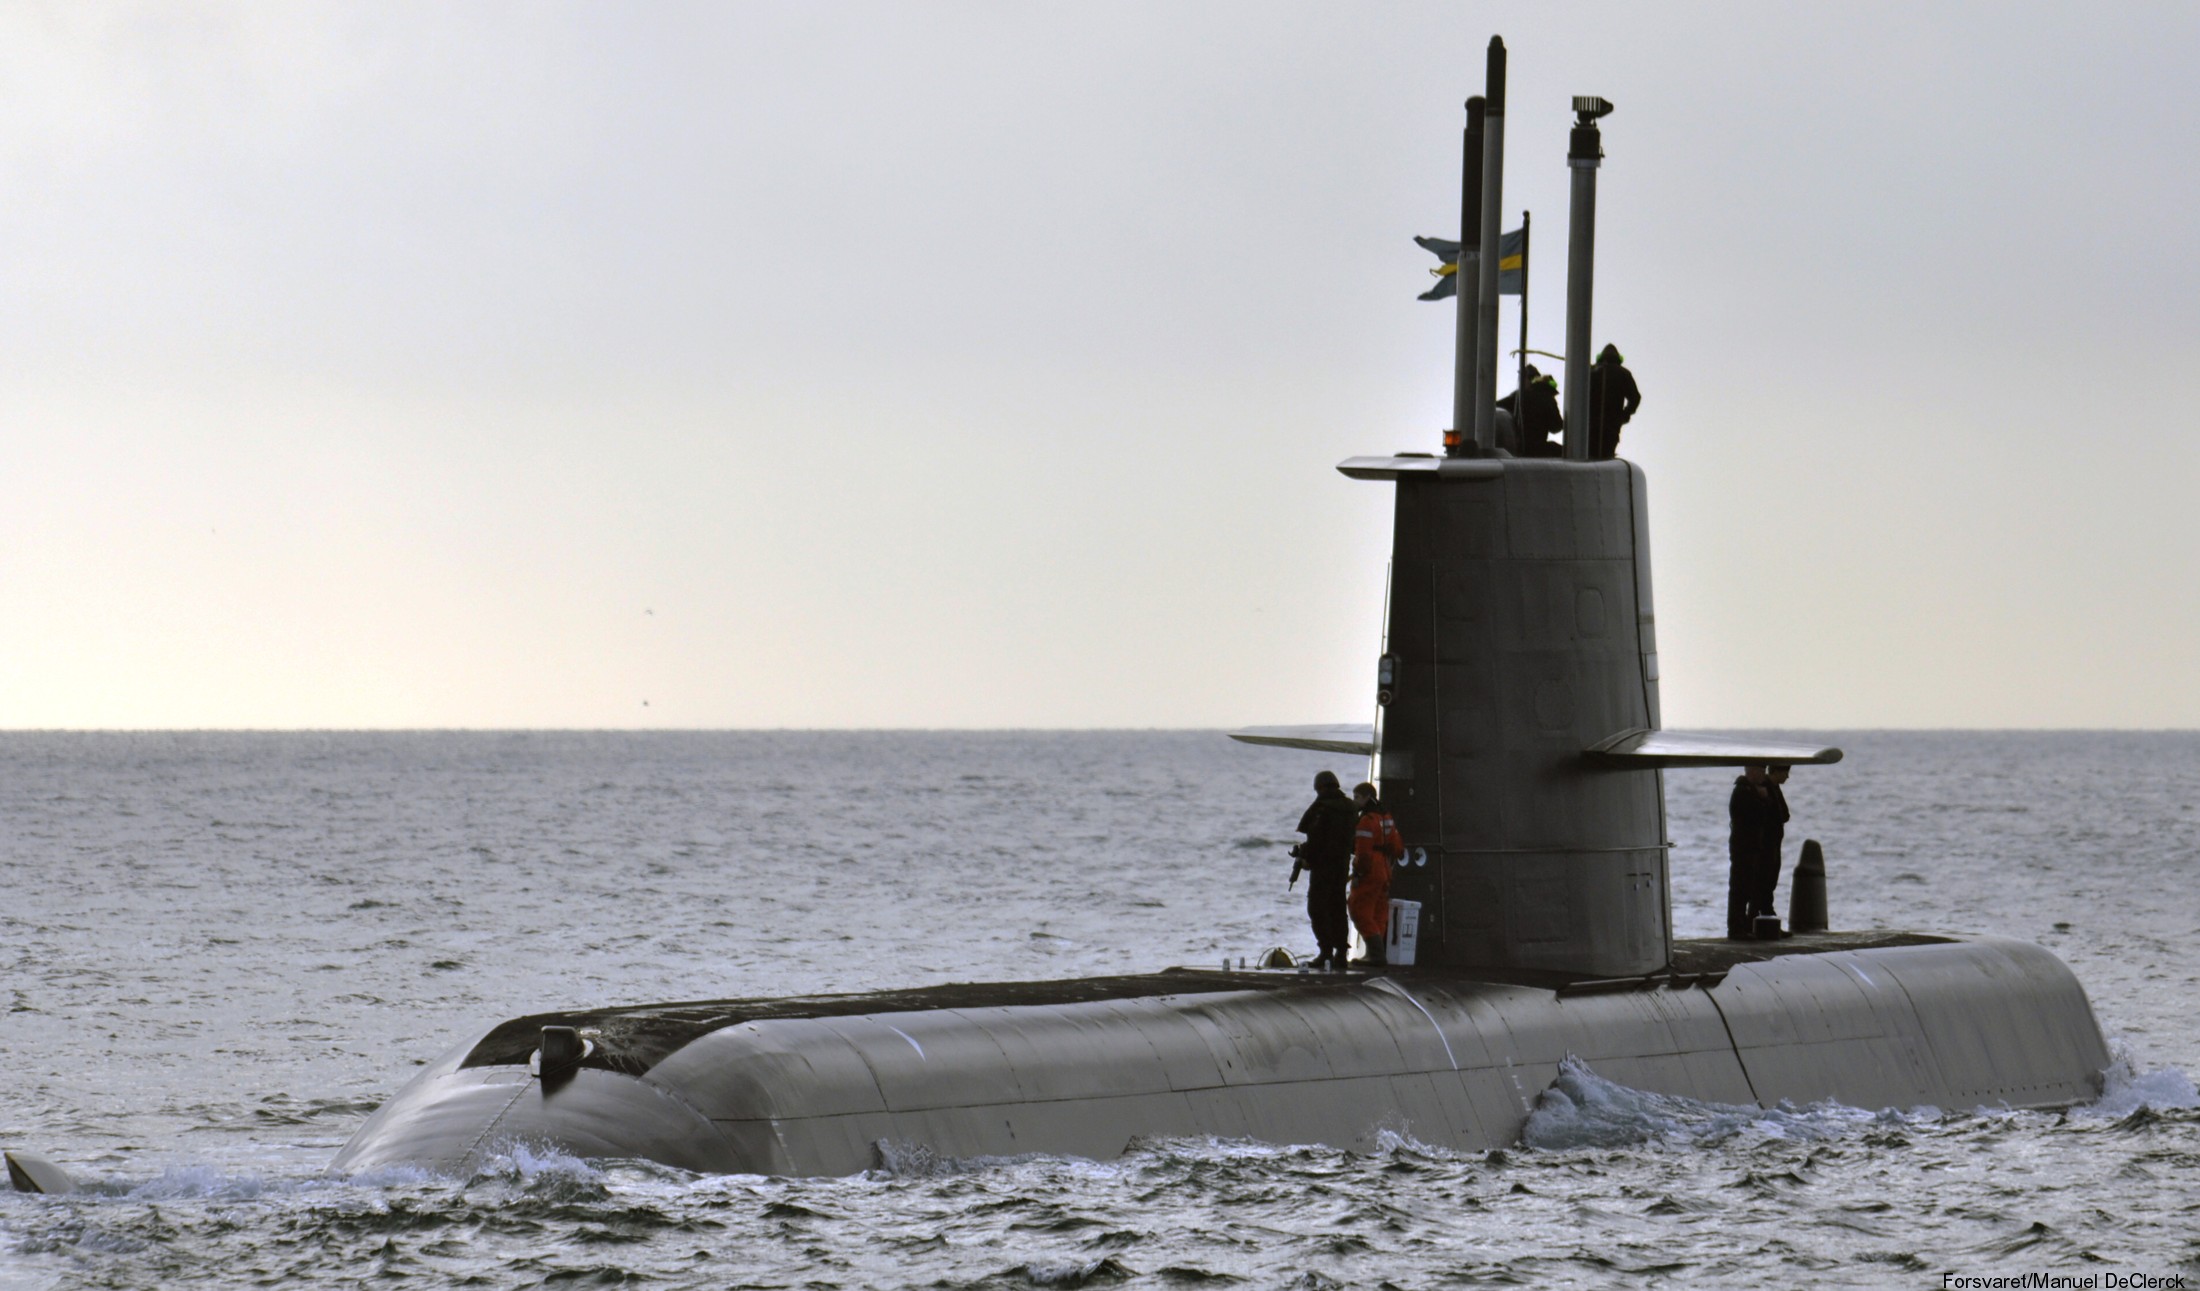 hswms hms gotland gtd class submarine ssk swedish navy svenska marinen försvarsmakten kockums 26